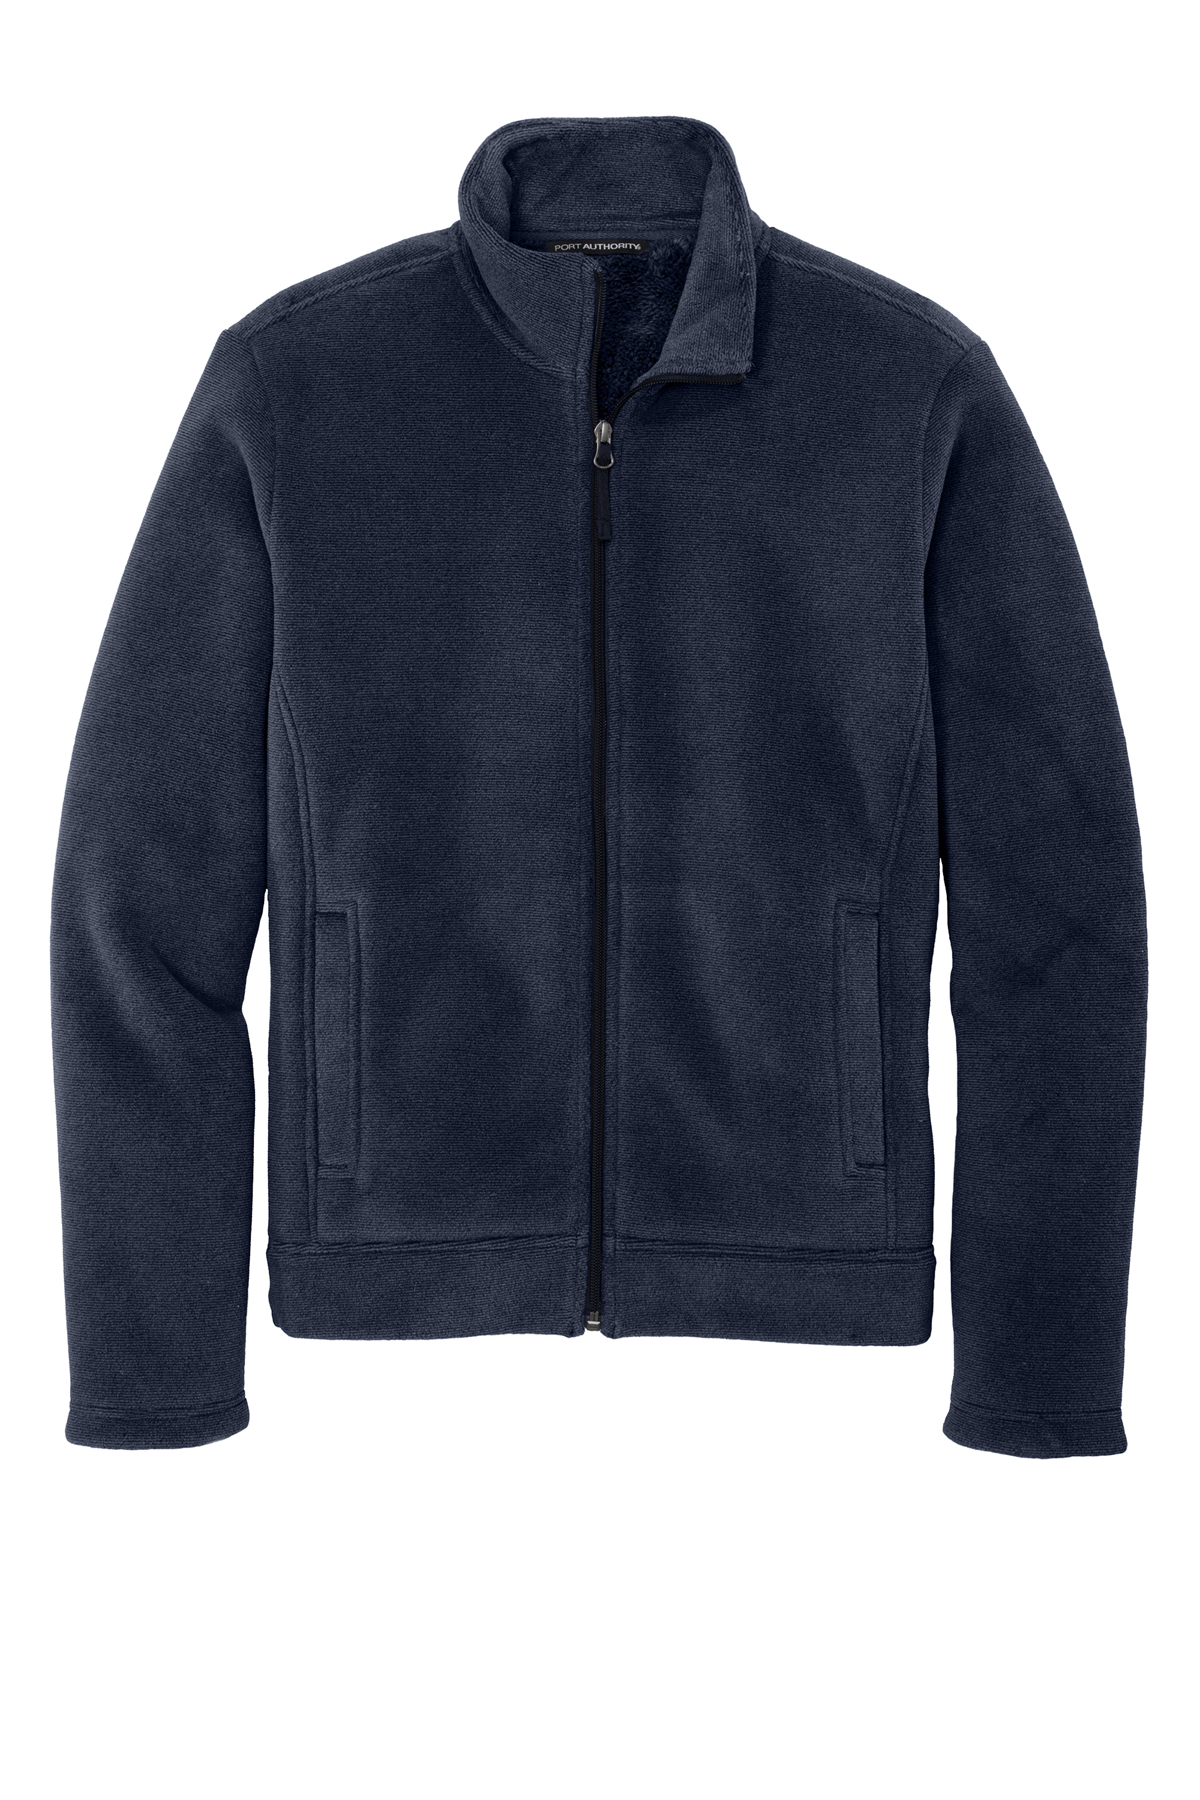 Port Authority Ultra Warm Brushed | | Jacket Port Fleece Product Authority